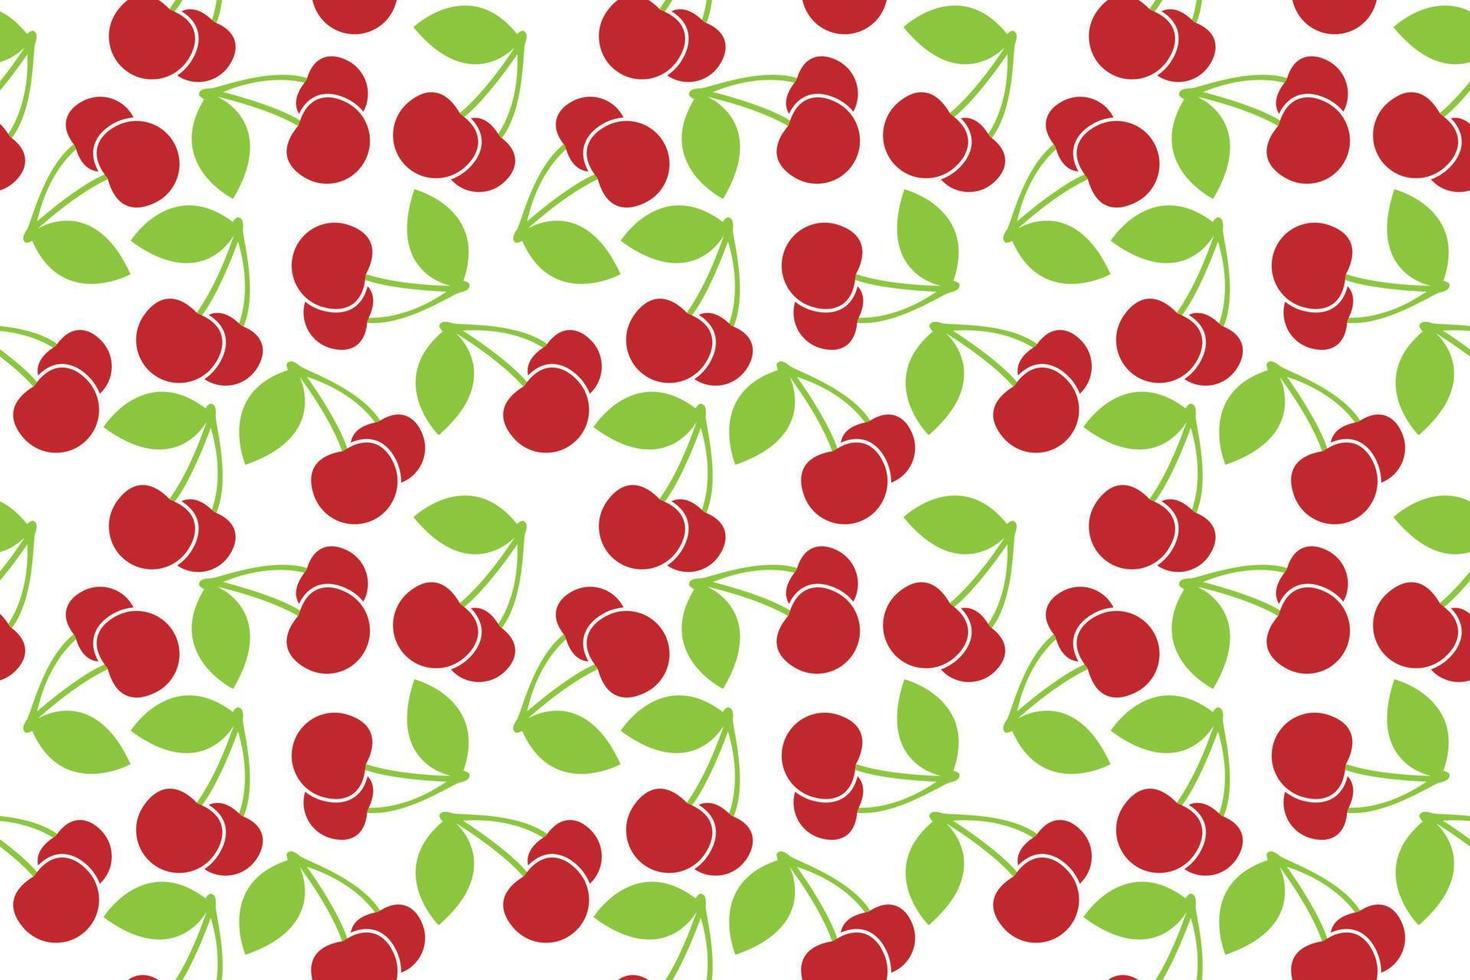 Kirsche frisches Obst nahtloses abstraktes Muster auf weißem Hintergrundvektordesign vektor